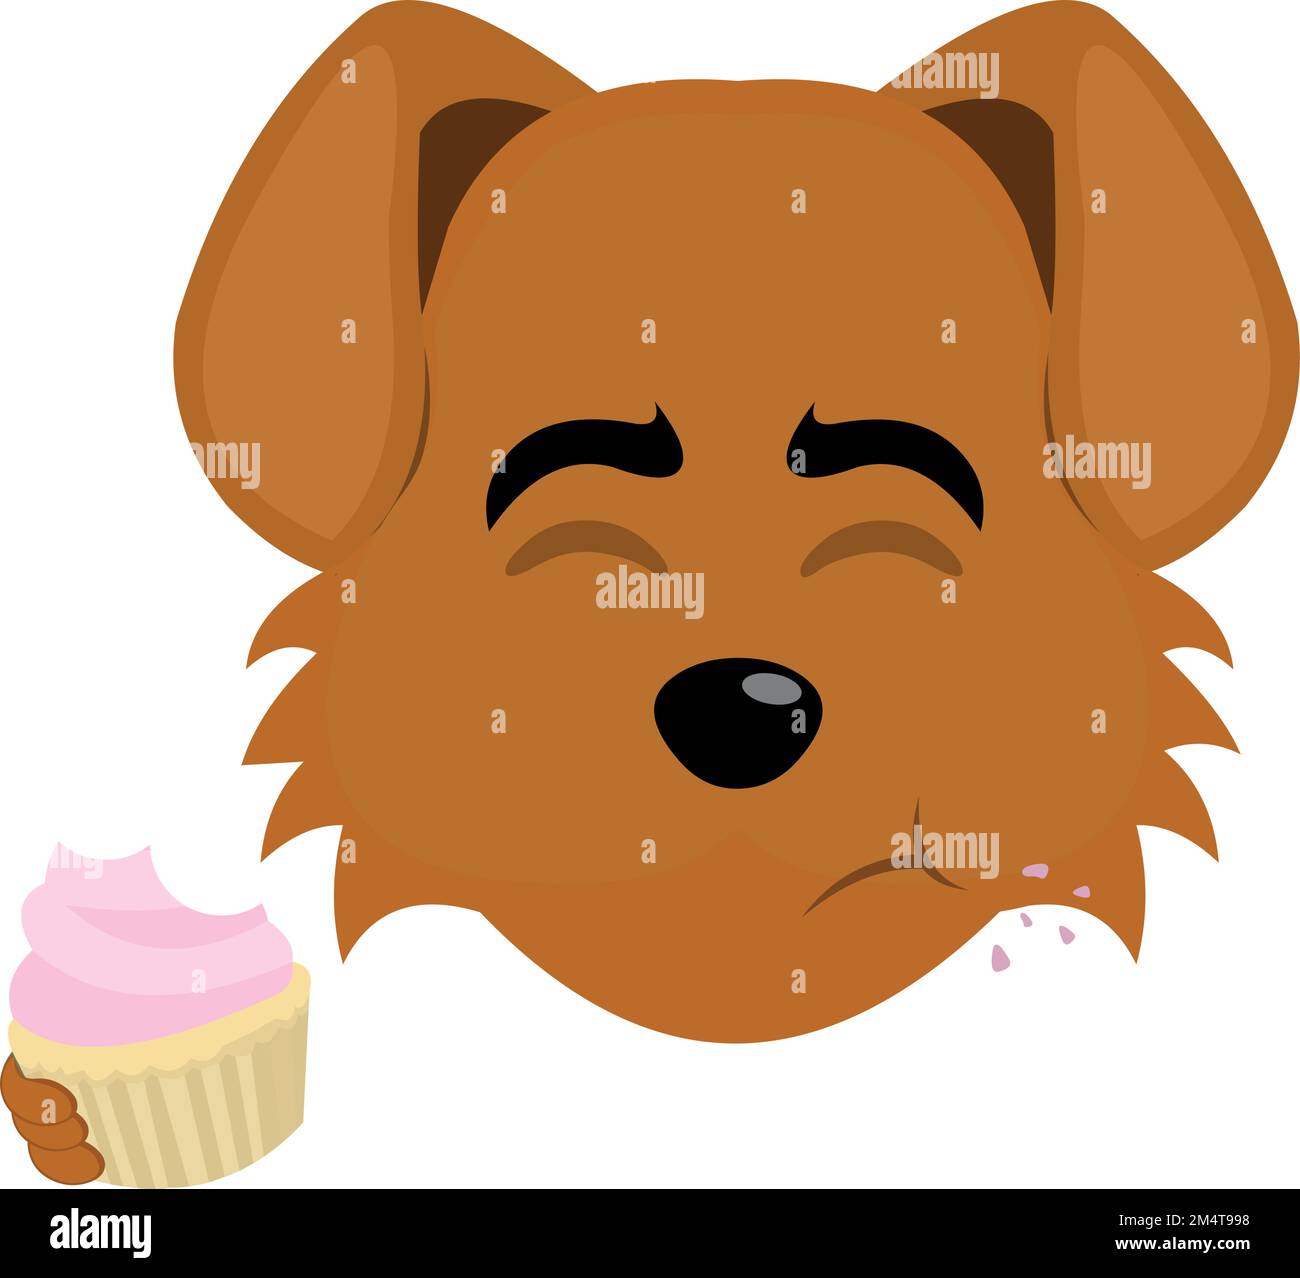 illustration vectorielle du visage d'un chien de dessin animé mangeant un cupcake ou un muffin Illustration de Vecteur